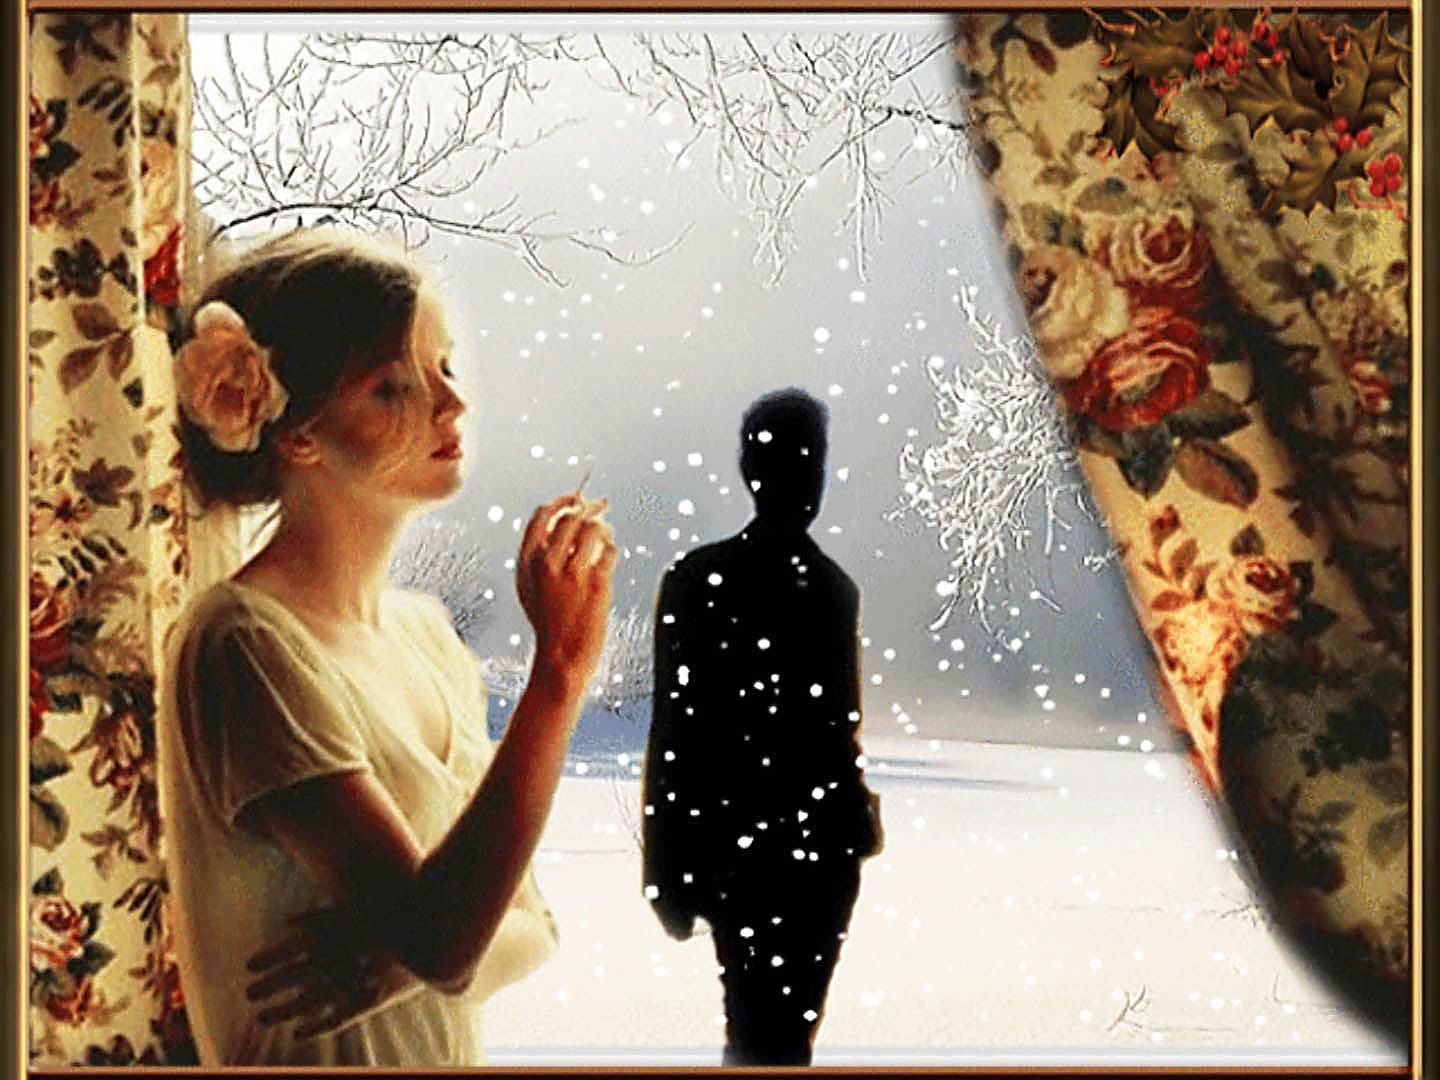 Счастье в прощении. Ждет у окна. Зима расставание. Мужчина и женщина у окна. Расставание любовь зима.